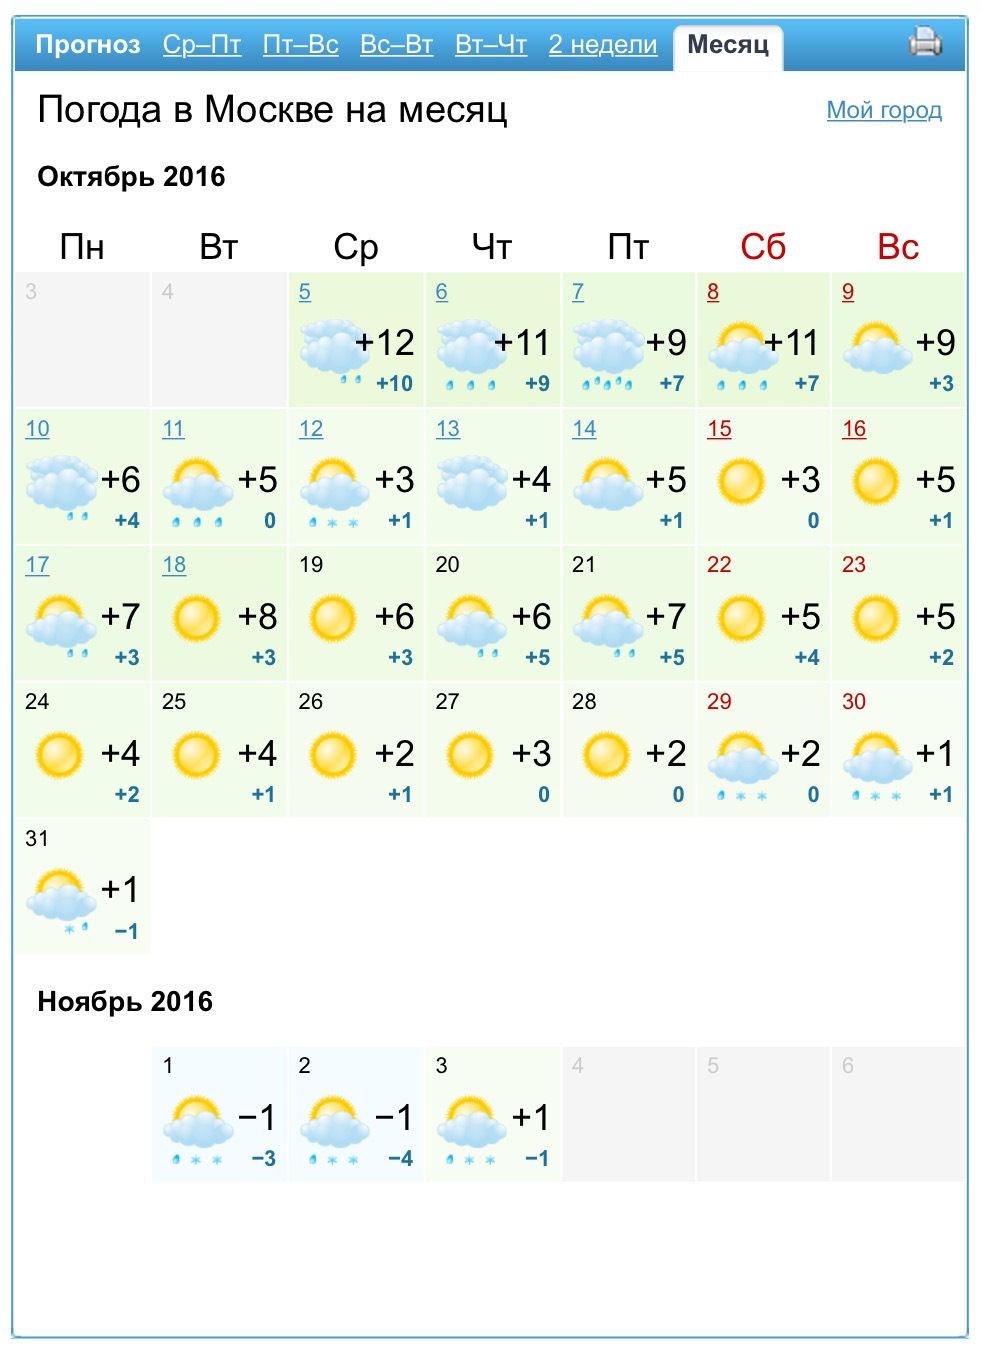 Погода на неделю 0. Прогноз погоды на неделю. Прогноз погоды в Москве. Прогноспогодынанеделю. Погода за неделю.